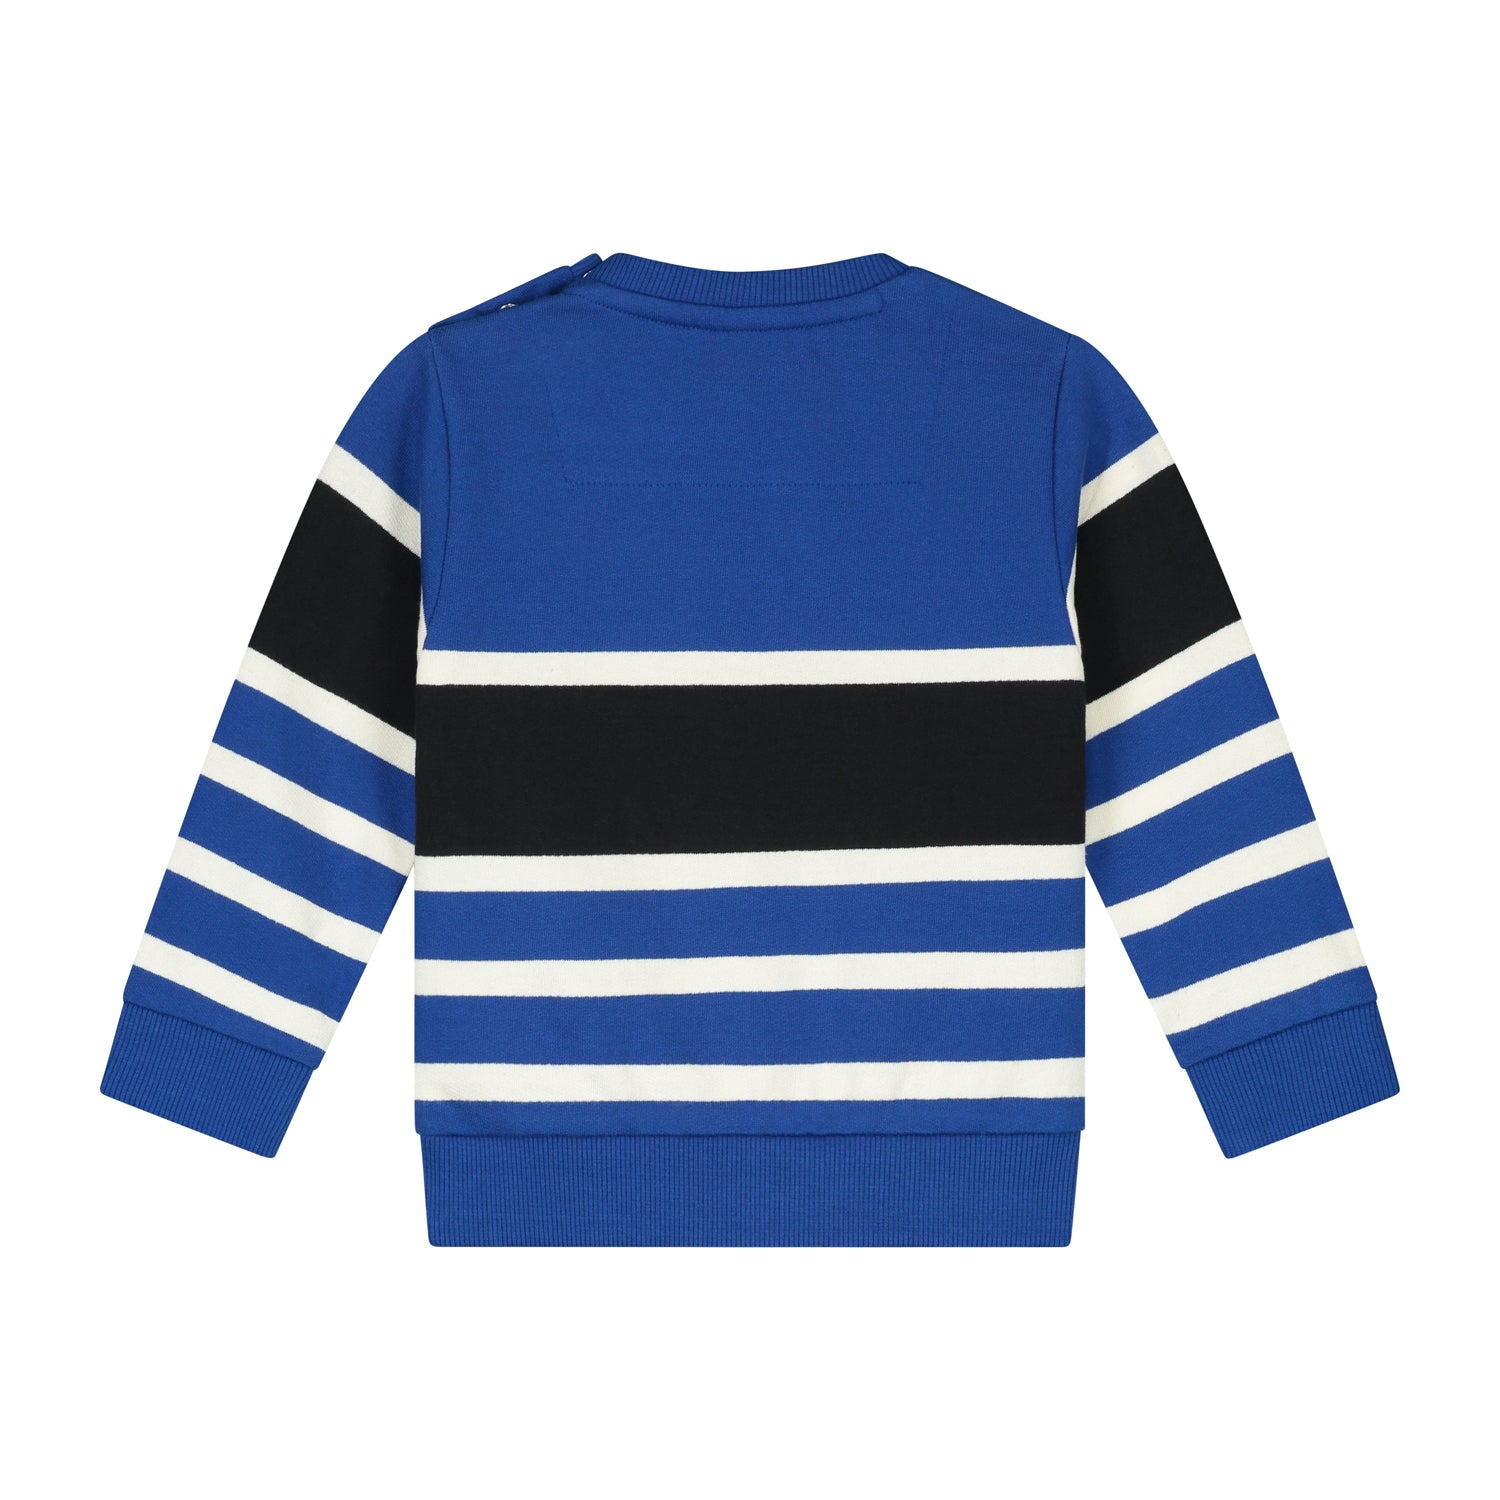 Jongens Sweater Stripe Blue van Skurk Little Rebel in de kleur Blue in maat 86.